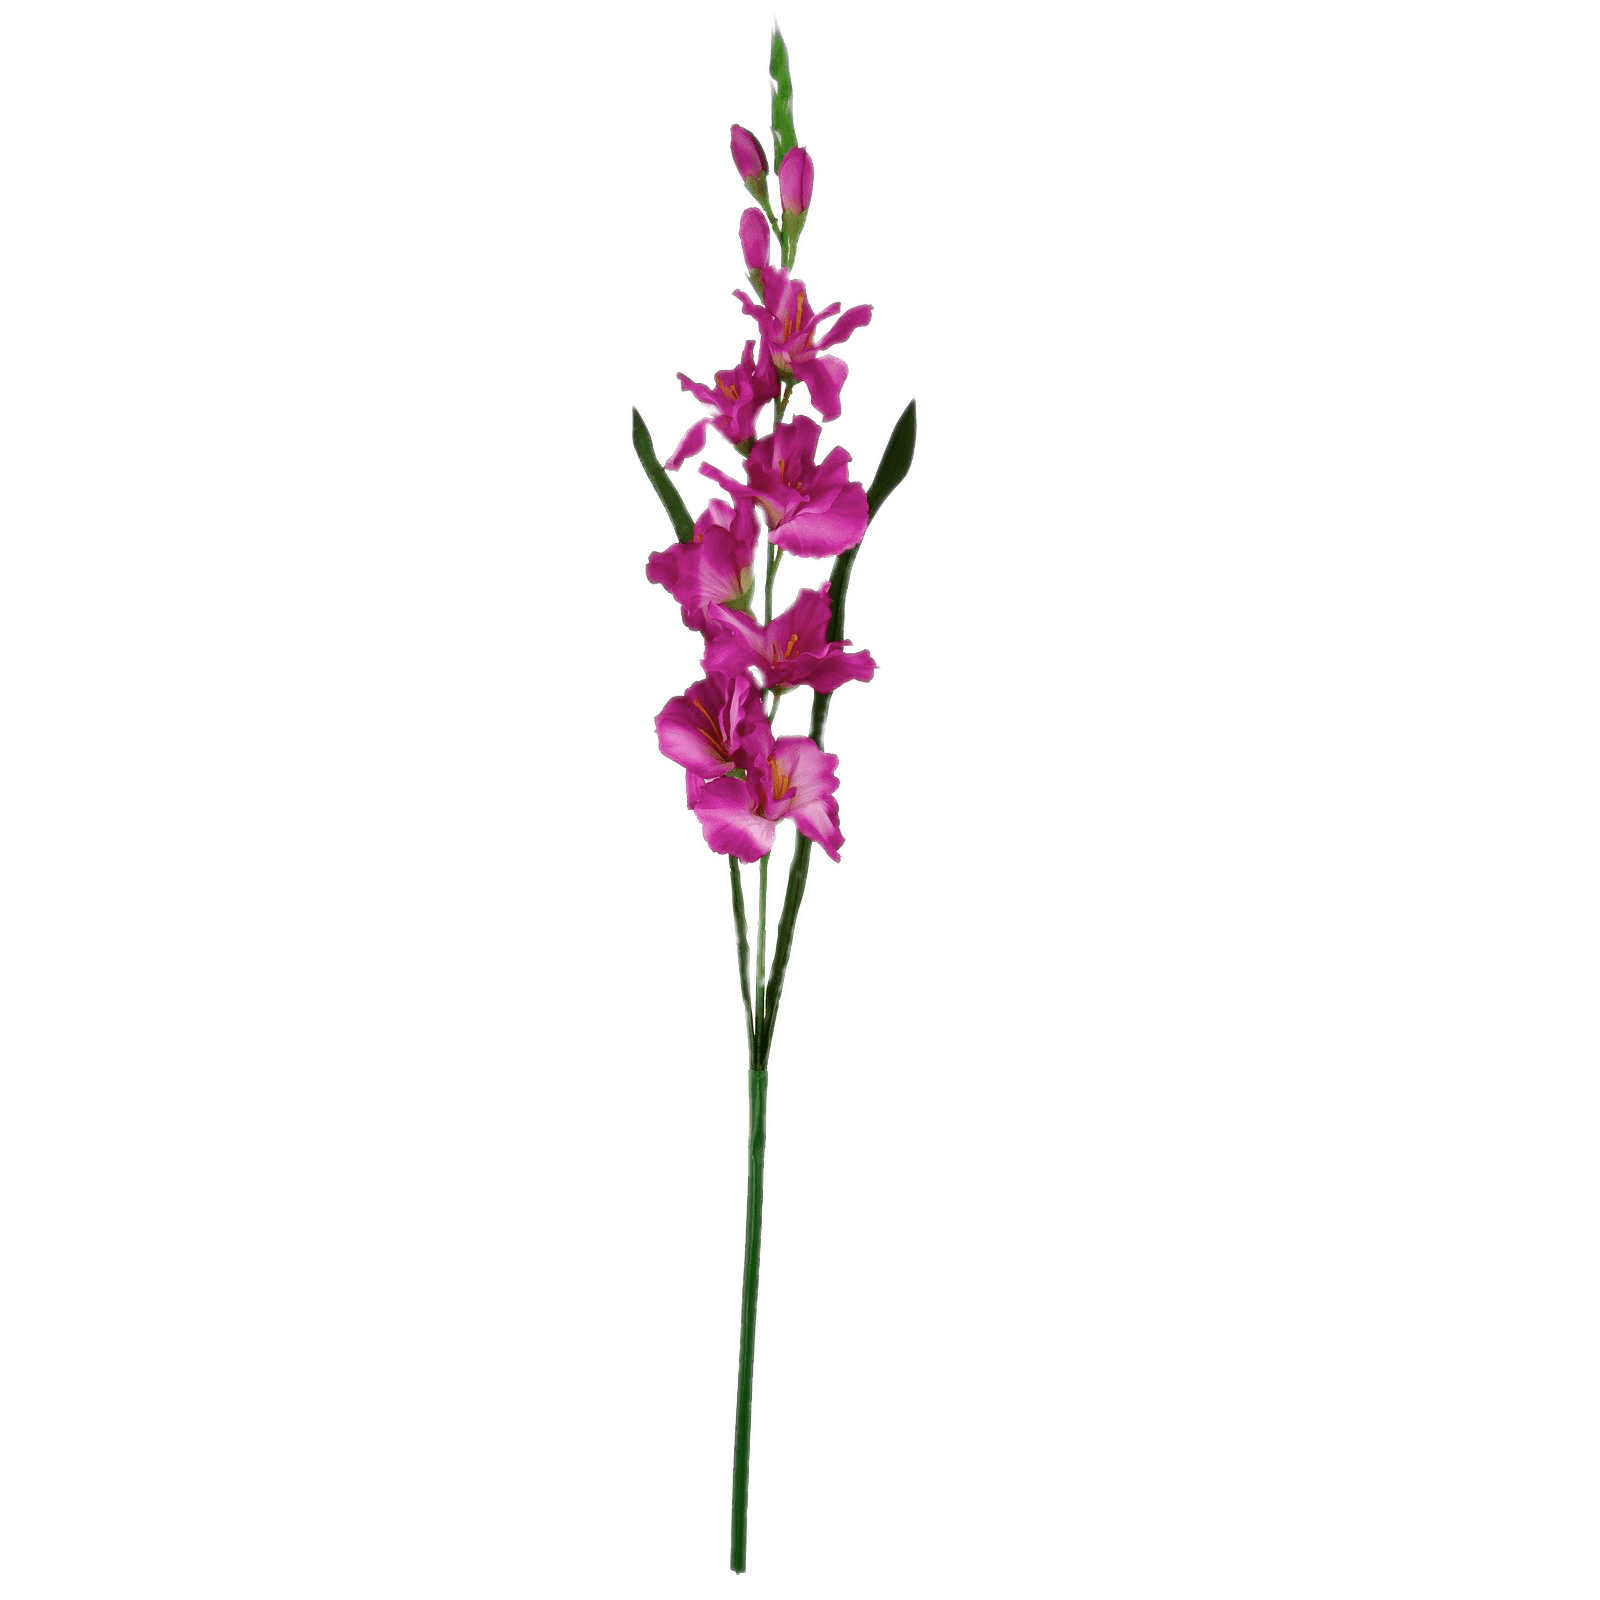 Gladiolus Transparent Images